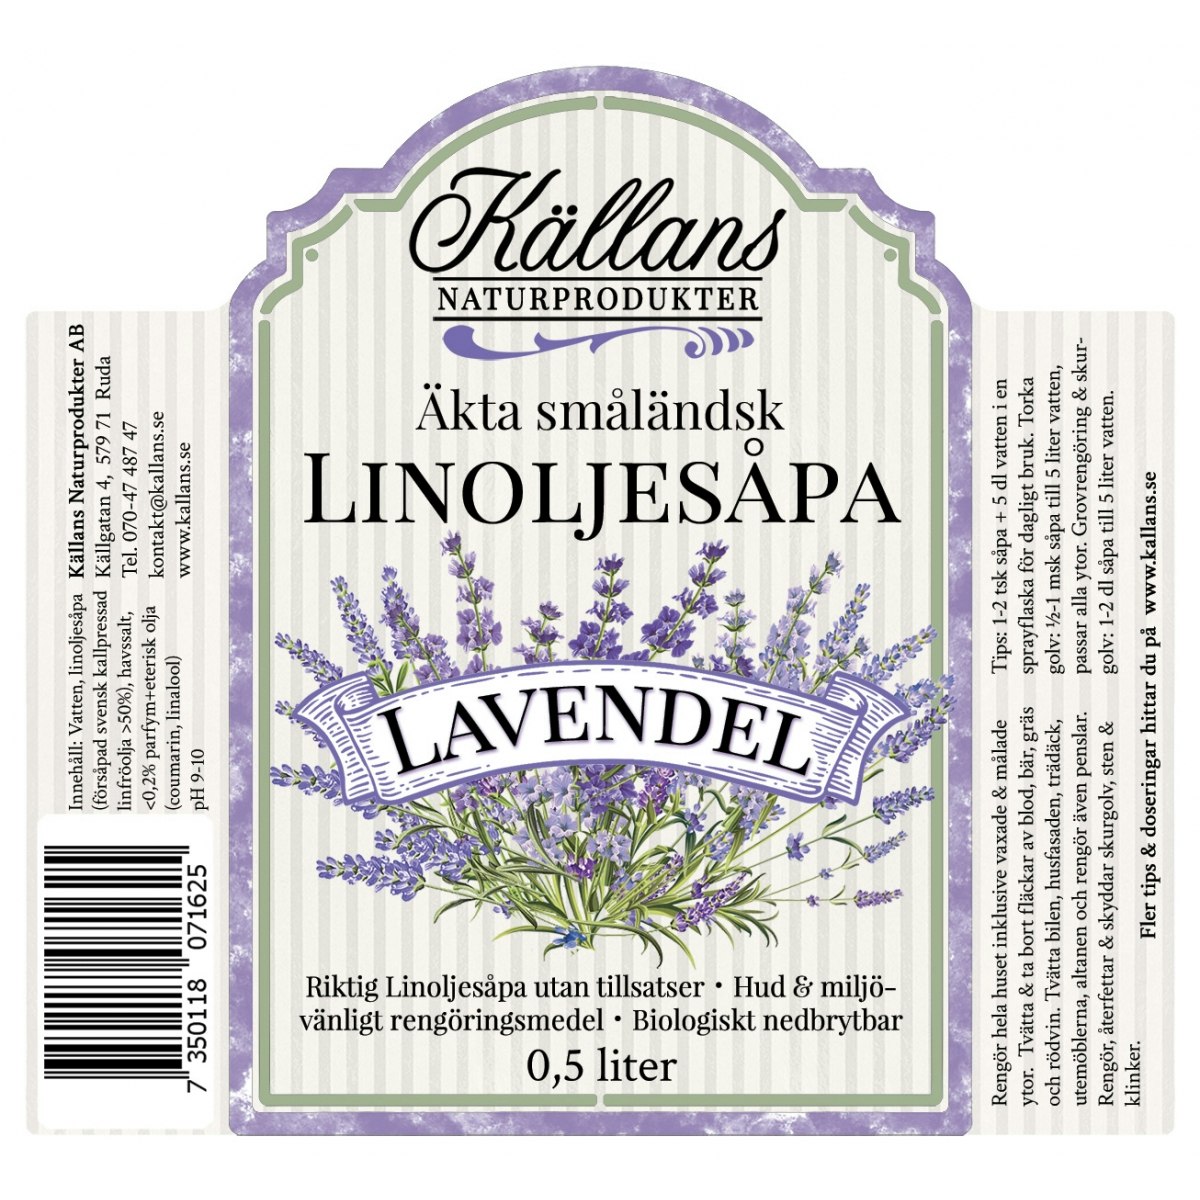 Linoljesåpa Lavendel Källans Naturprodukter